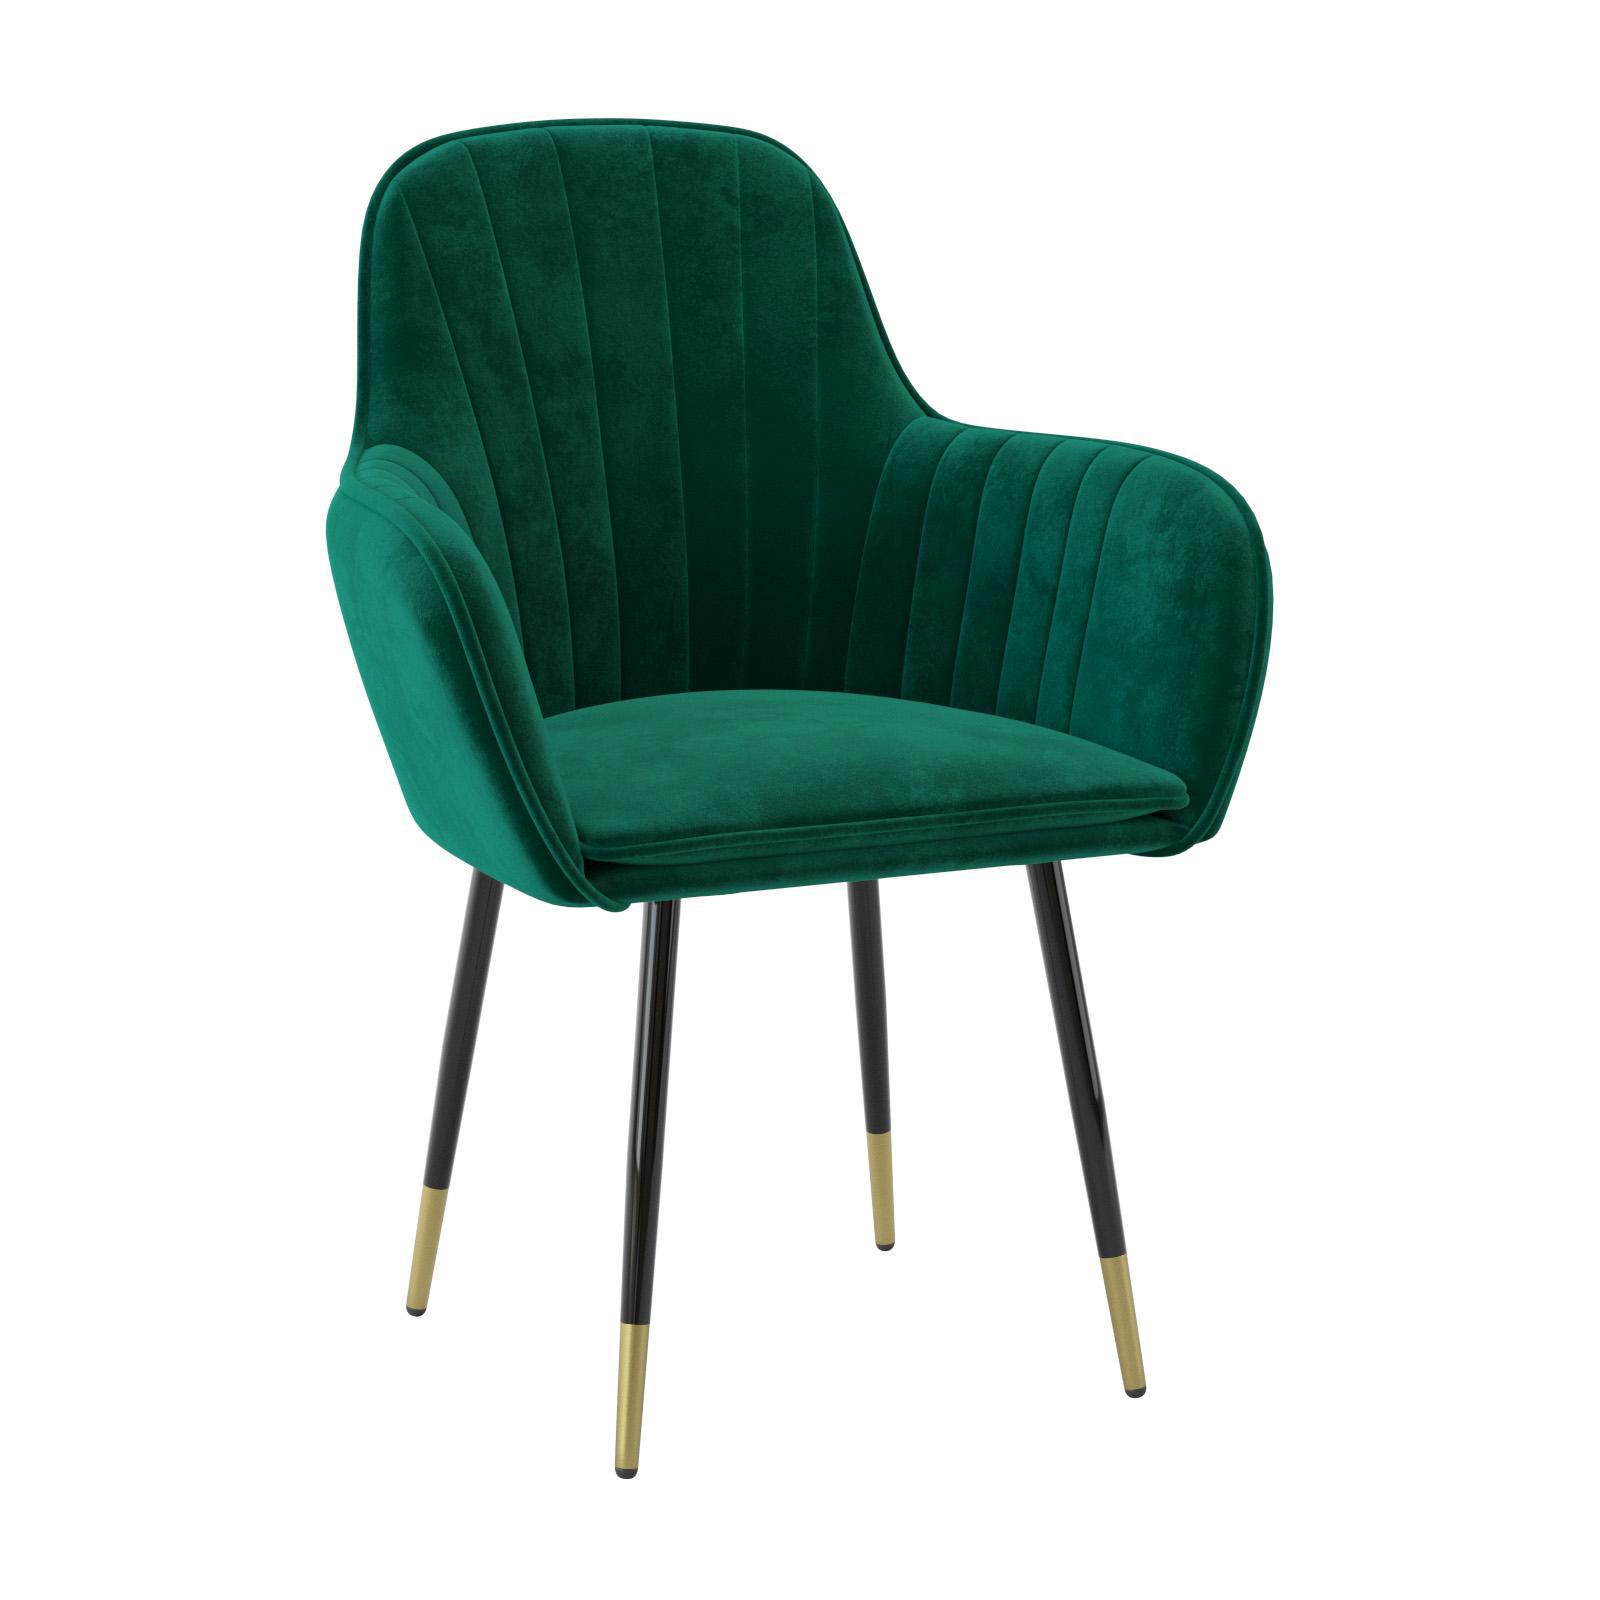 90200442 Стул-кресло для кухни/гостинной/спальни цвет зеленый Феникс STLM-0130723 MILAVIO